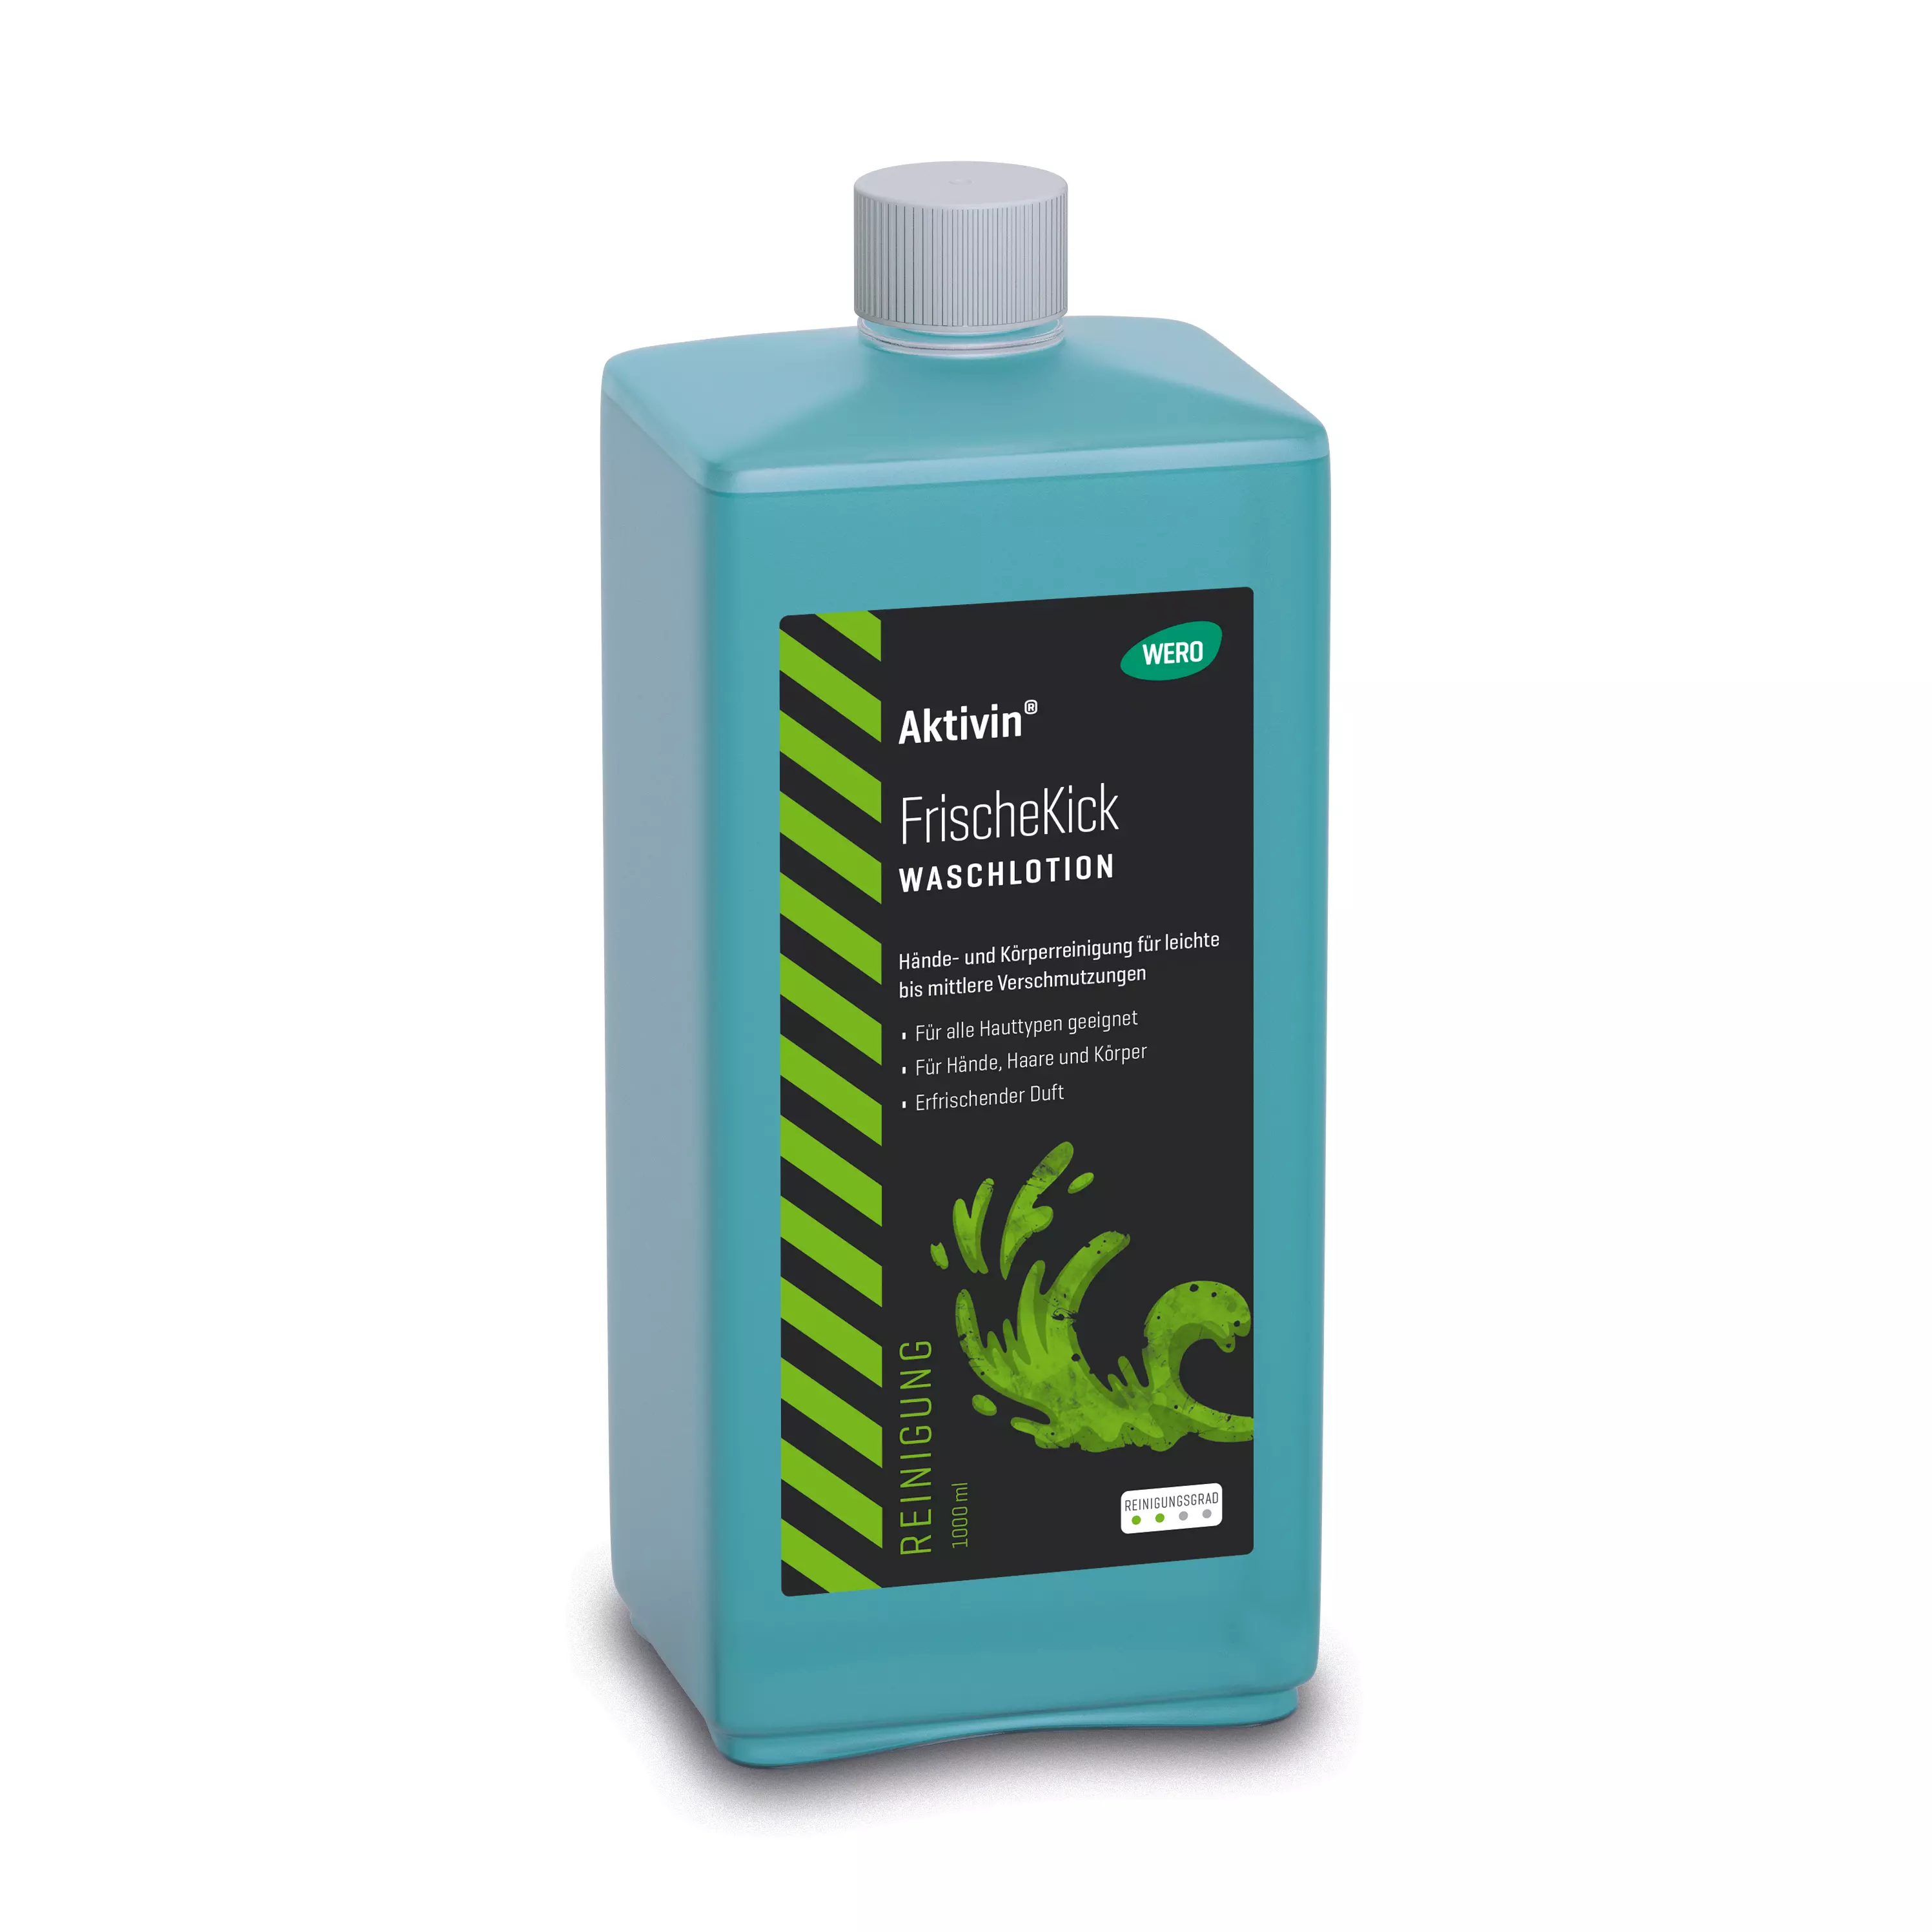 Skin cleansing Aktivin® FrischeKick - Euro bottle, 1,000 ml